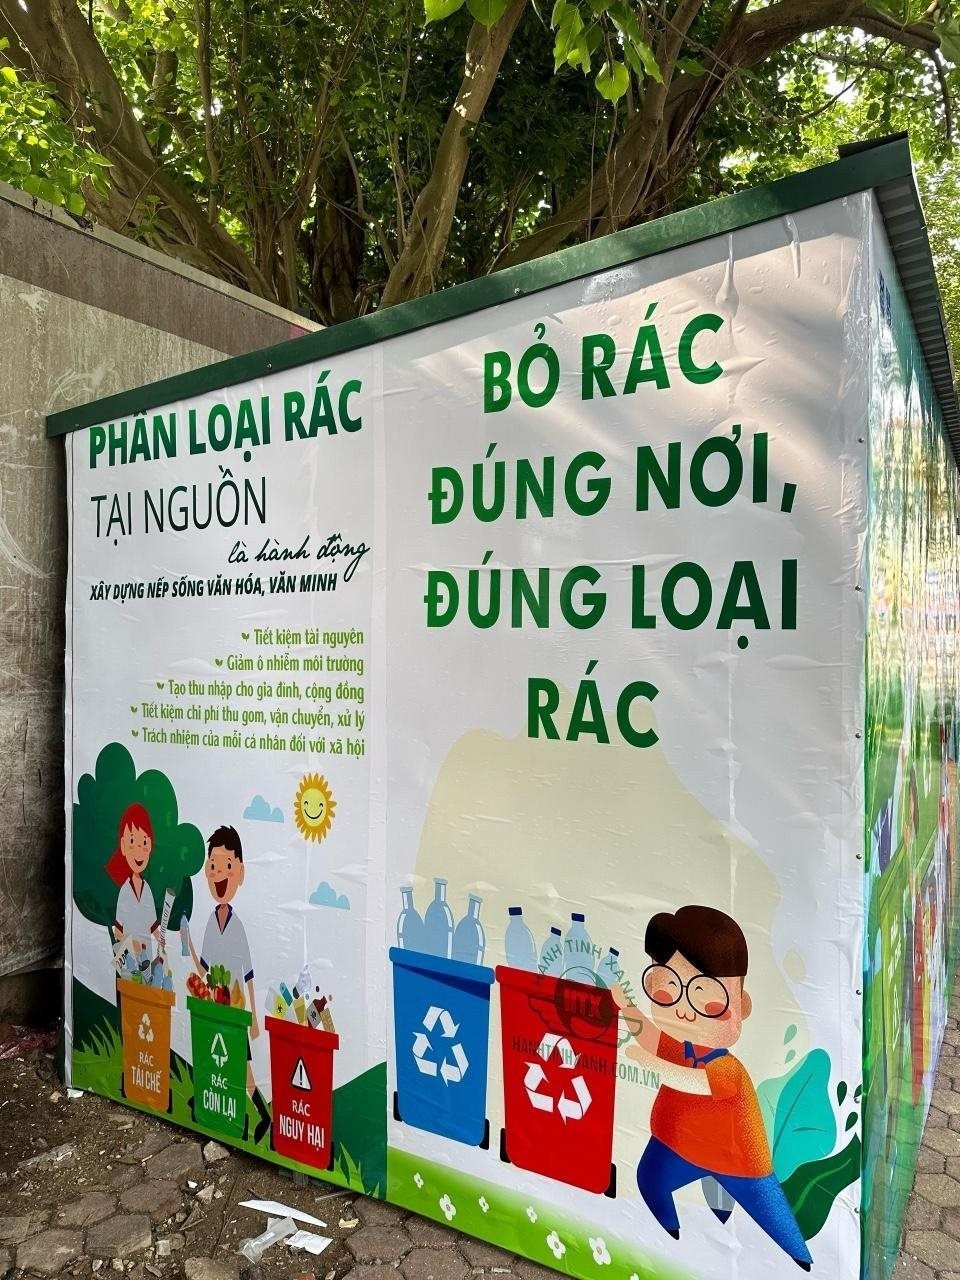 Phân loại rác tại nguồn hướng đến xây dựng nếp sống văn minh trong bảo vệ môi trường cho người dân các quận trên địa bàn Hà Nội